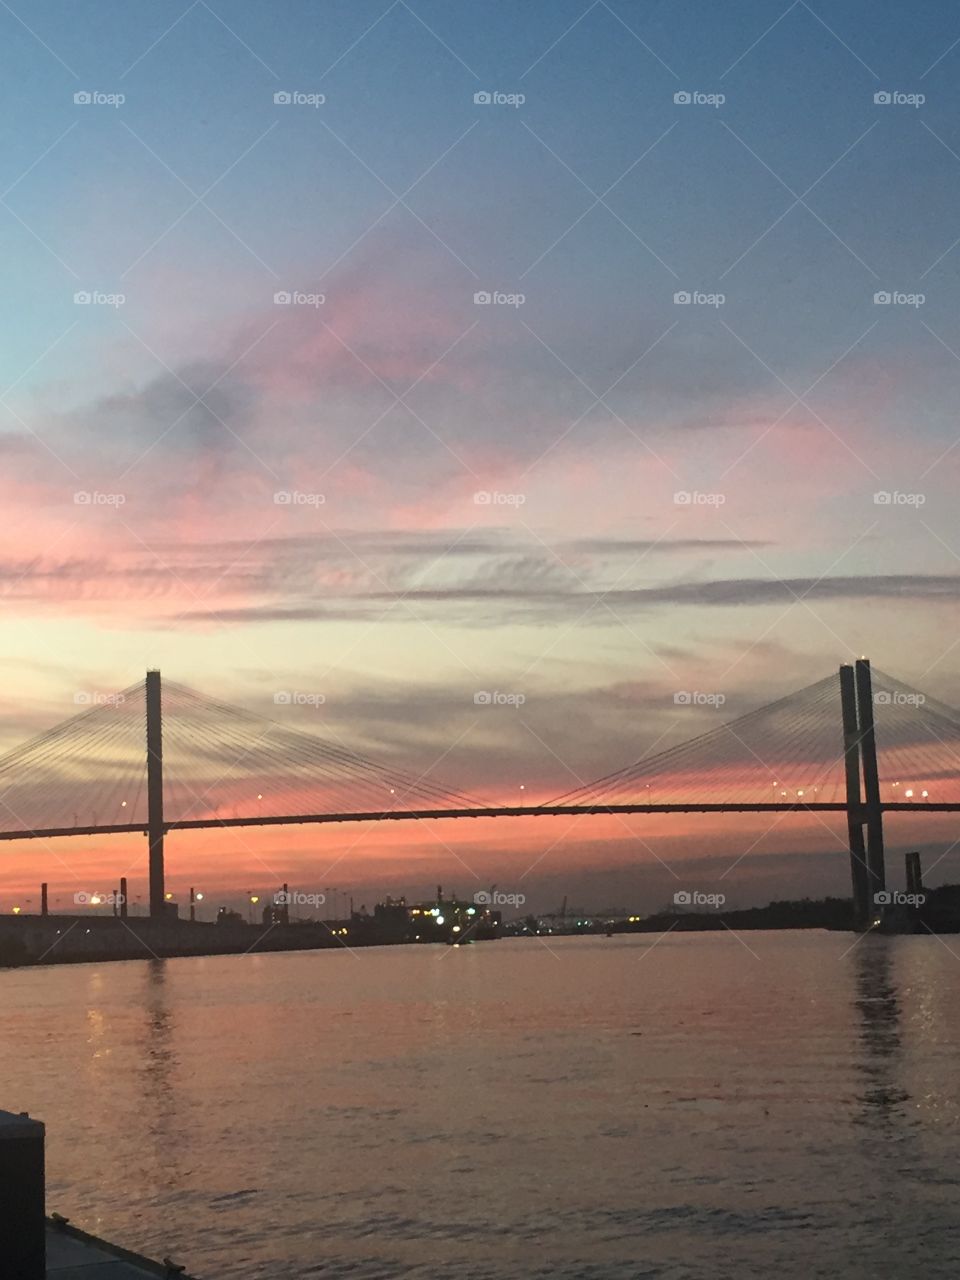 Savannah bridge at sunset